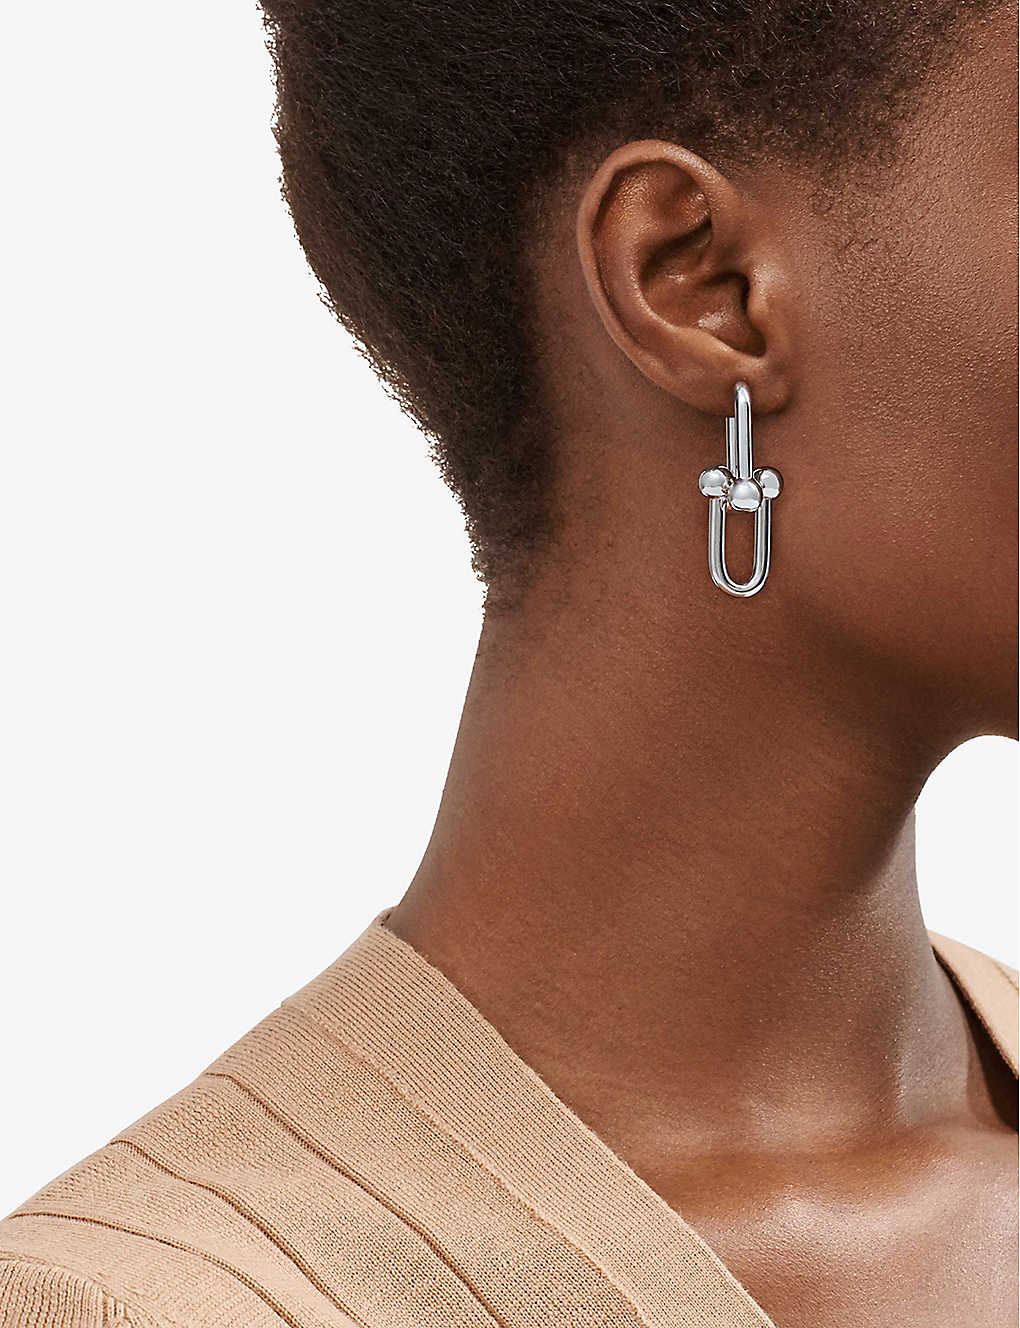 Silver Tiffany link earrings